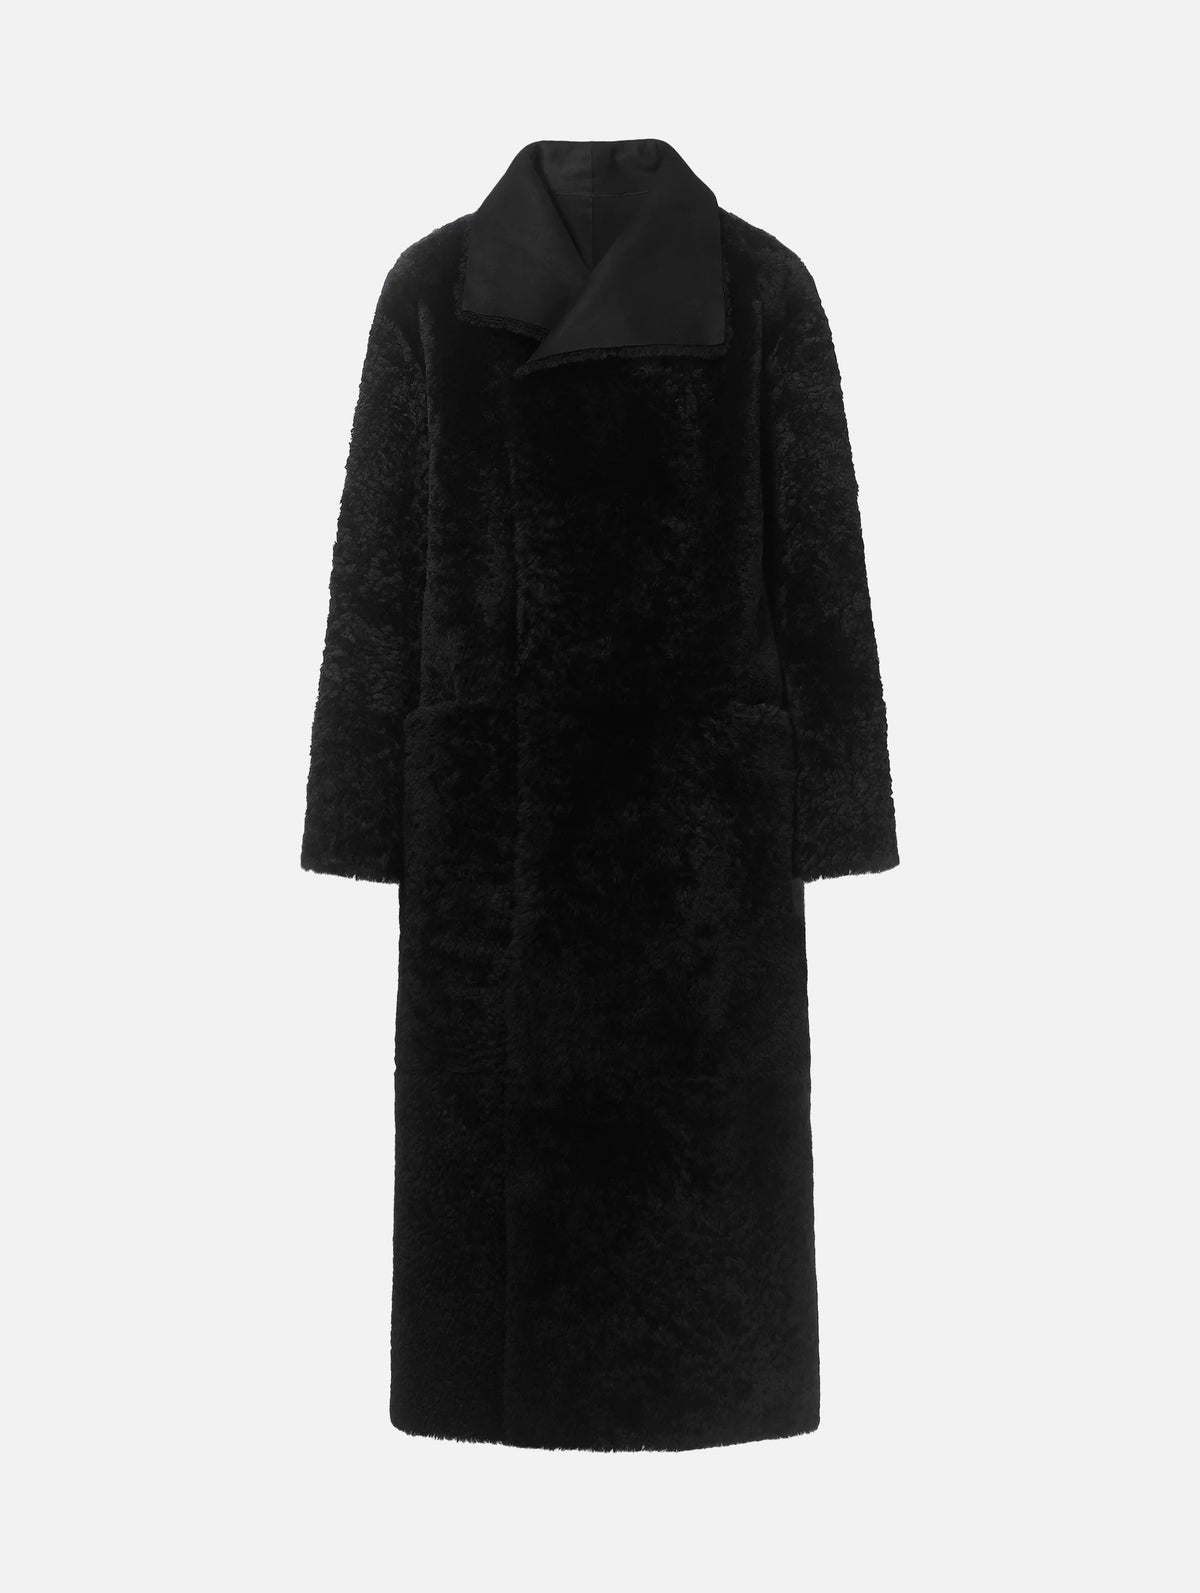 Birthday Shearling Coat in Black